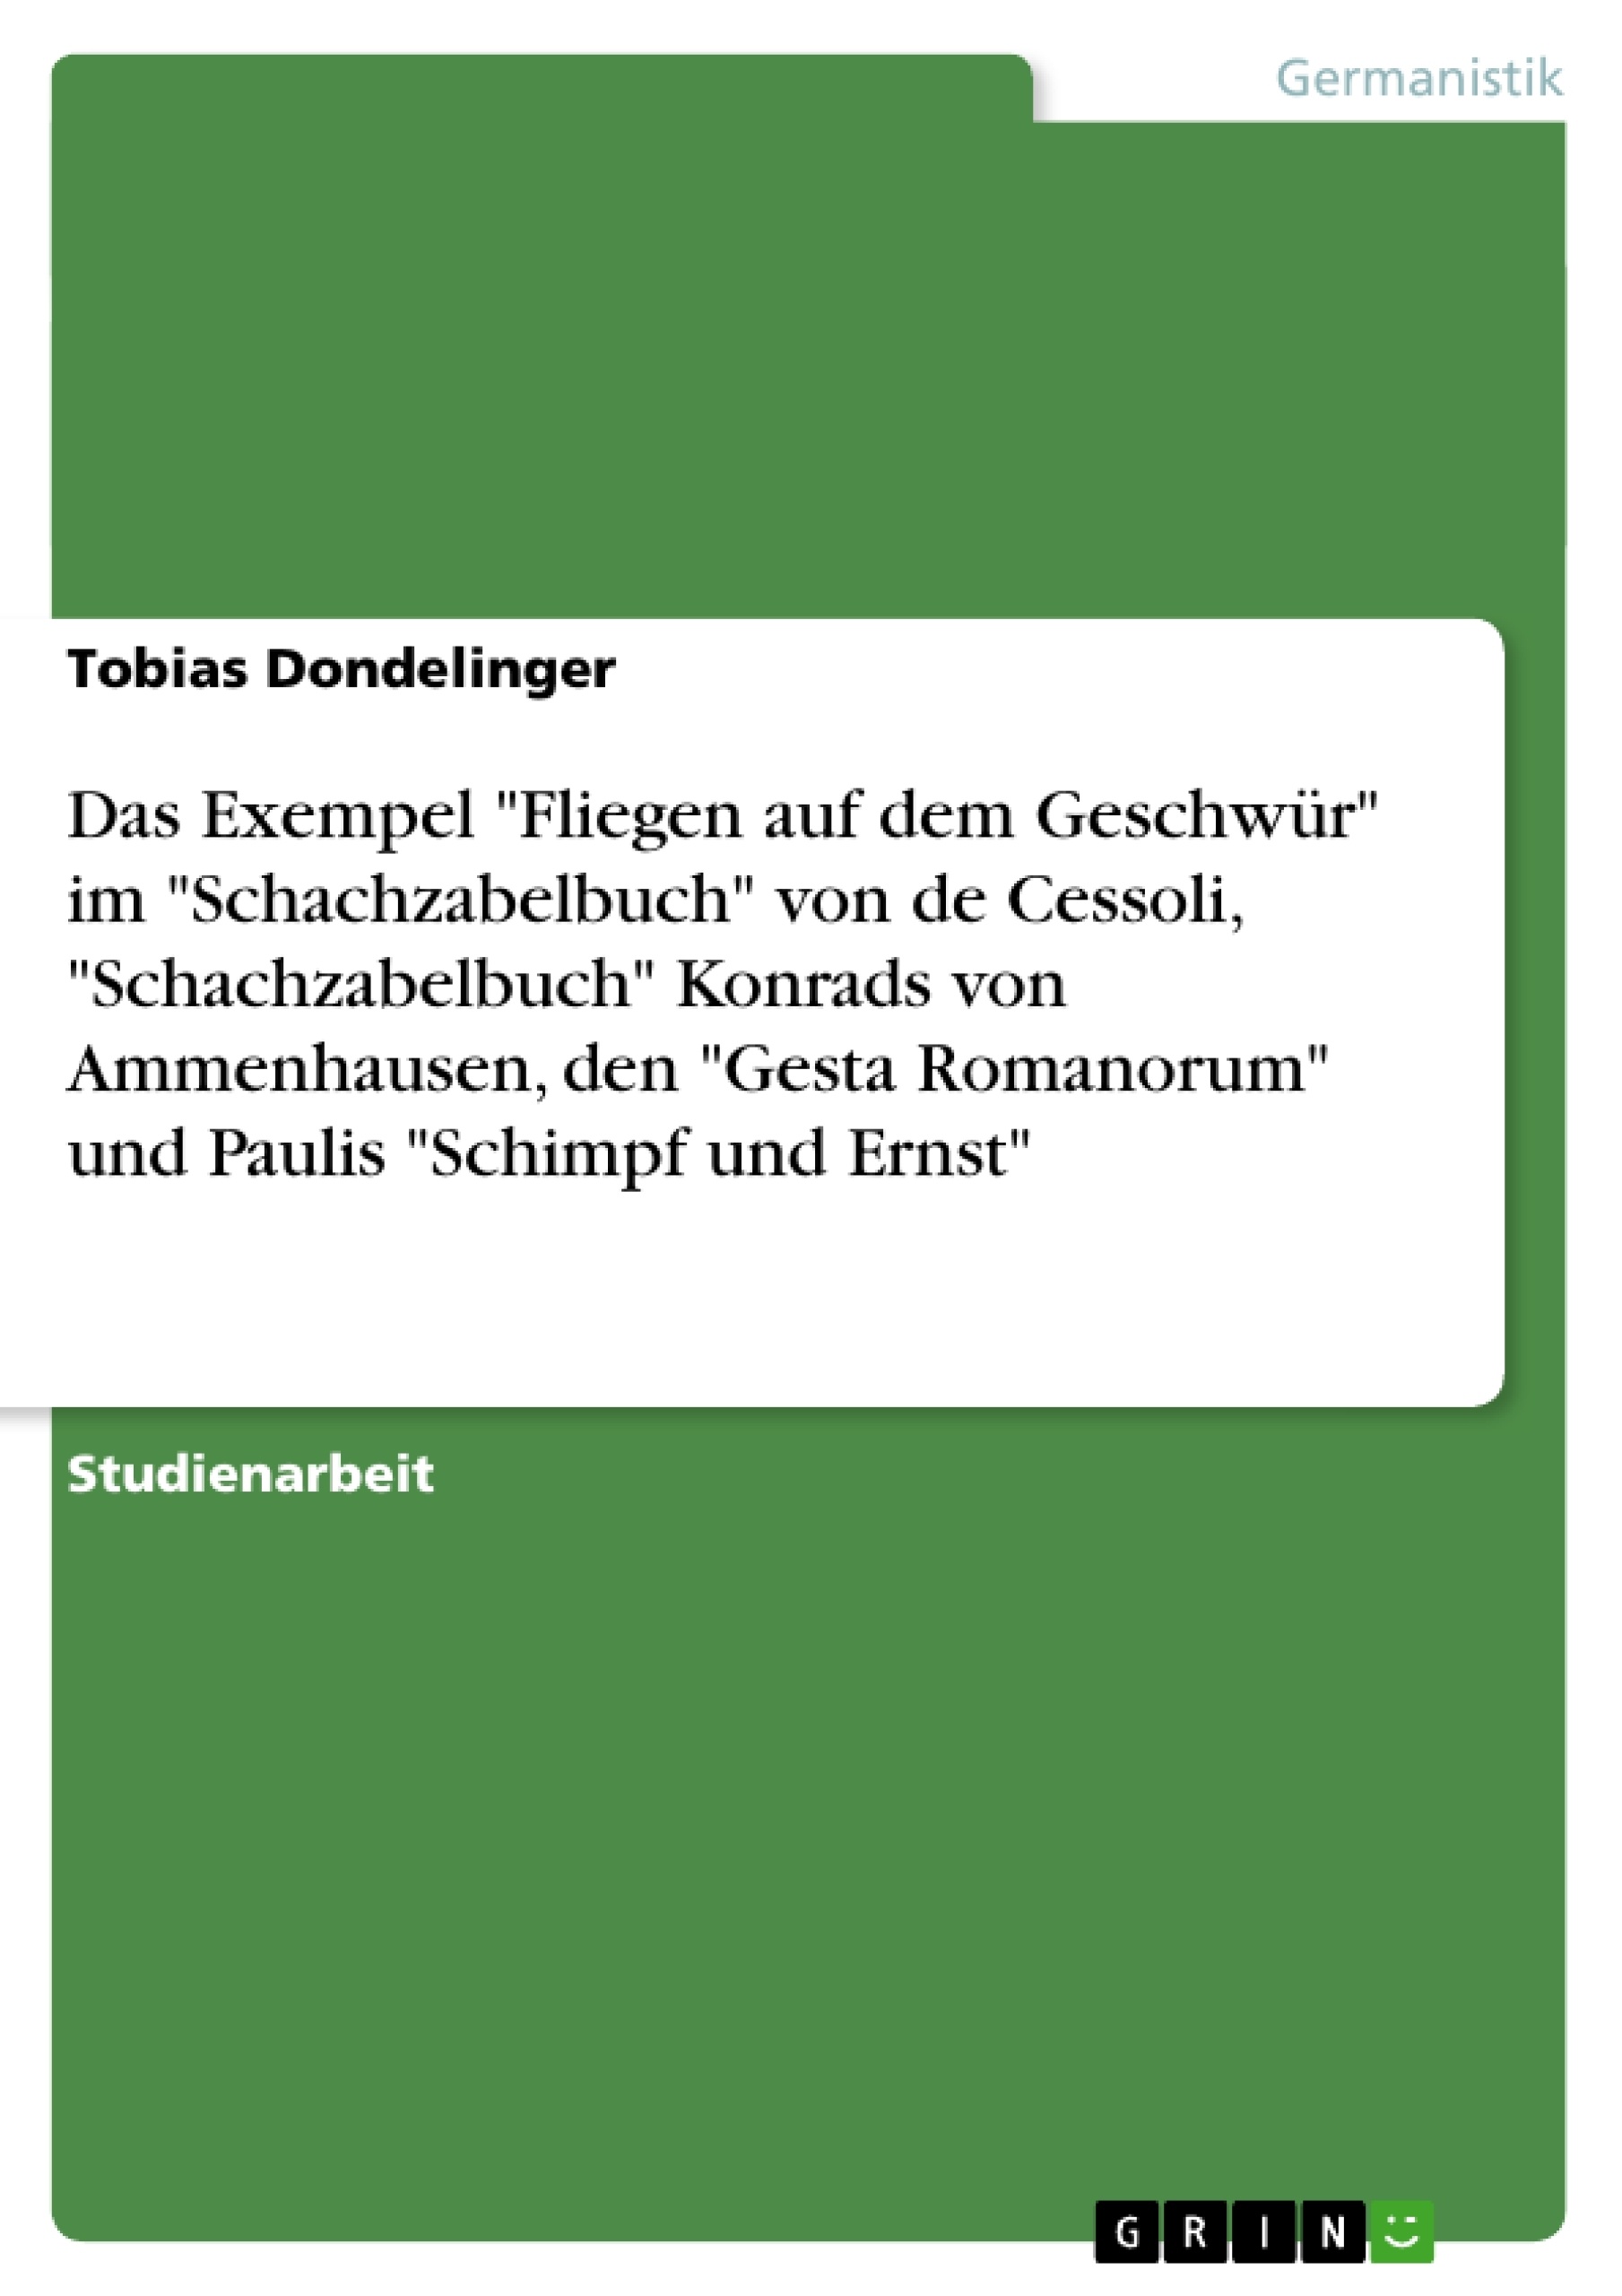 Titre: Das Exempel "Fliegen auf dem Geschwür" im  "Schachzabelbuch" von de Cessoli, "Schachzabelbuch" Konrads von Ammenhausen, den "Gesta Romanorum" und Paulis "Schimpf und Ernst"